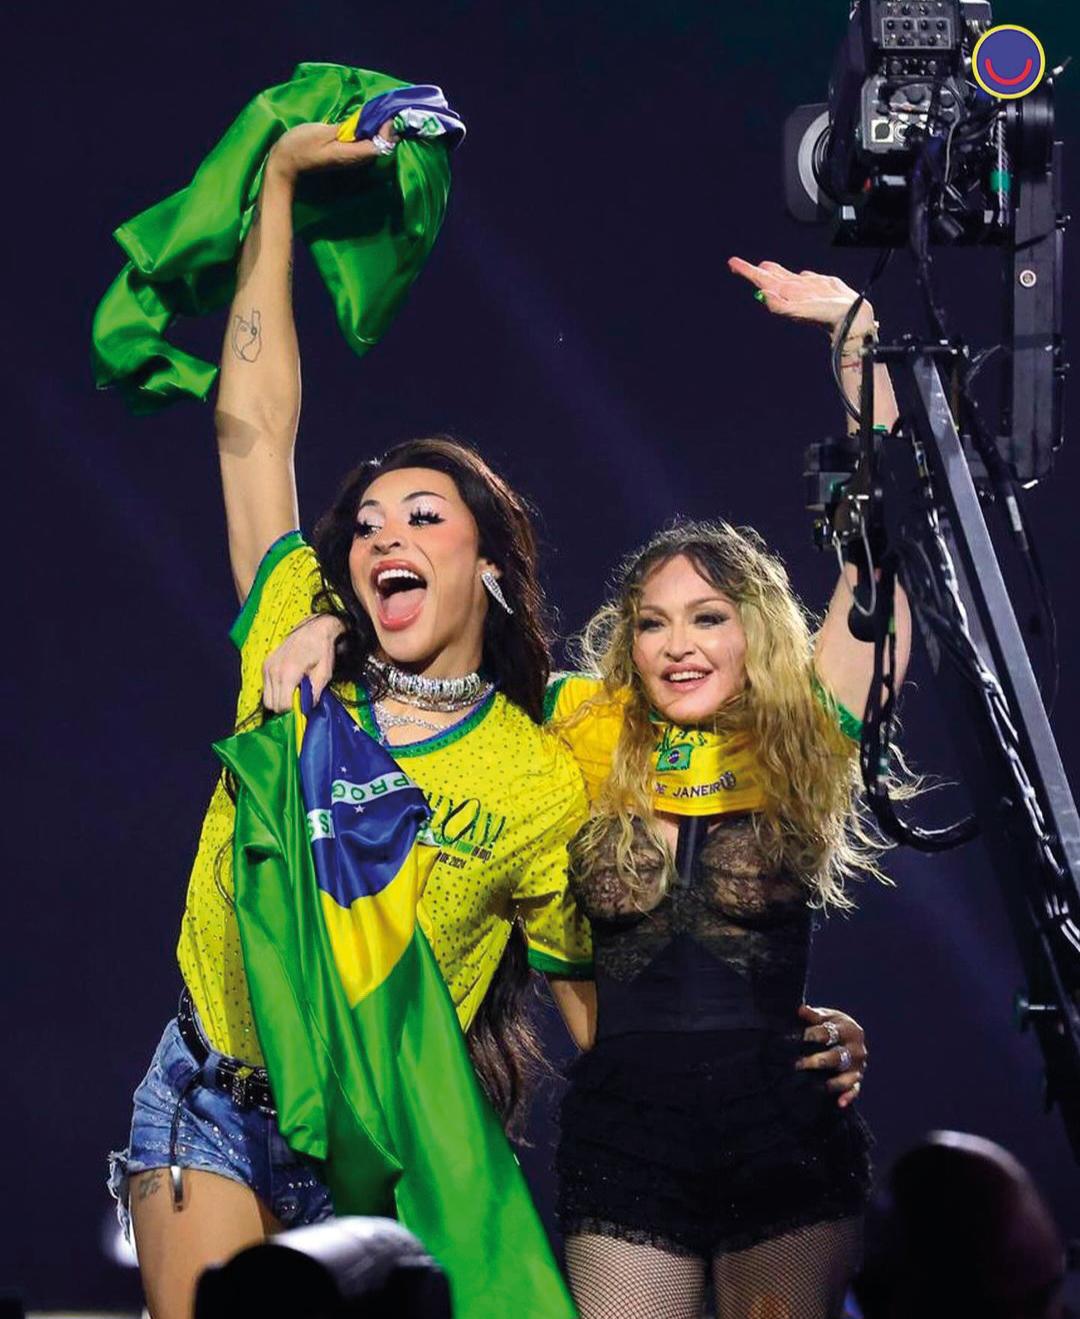 Pabllo Vittar subiu ao palco com a estrela pop, ambas vestidas com blusas da seleção brasileira (Foto/Divulgação)